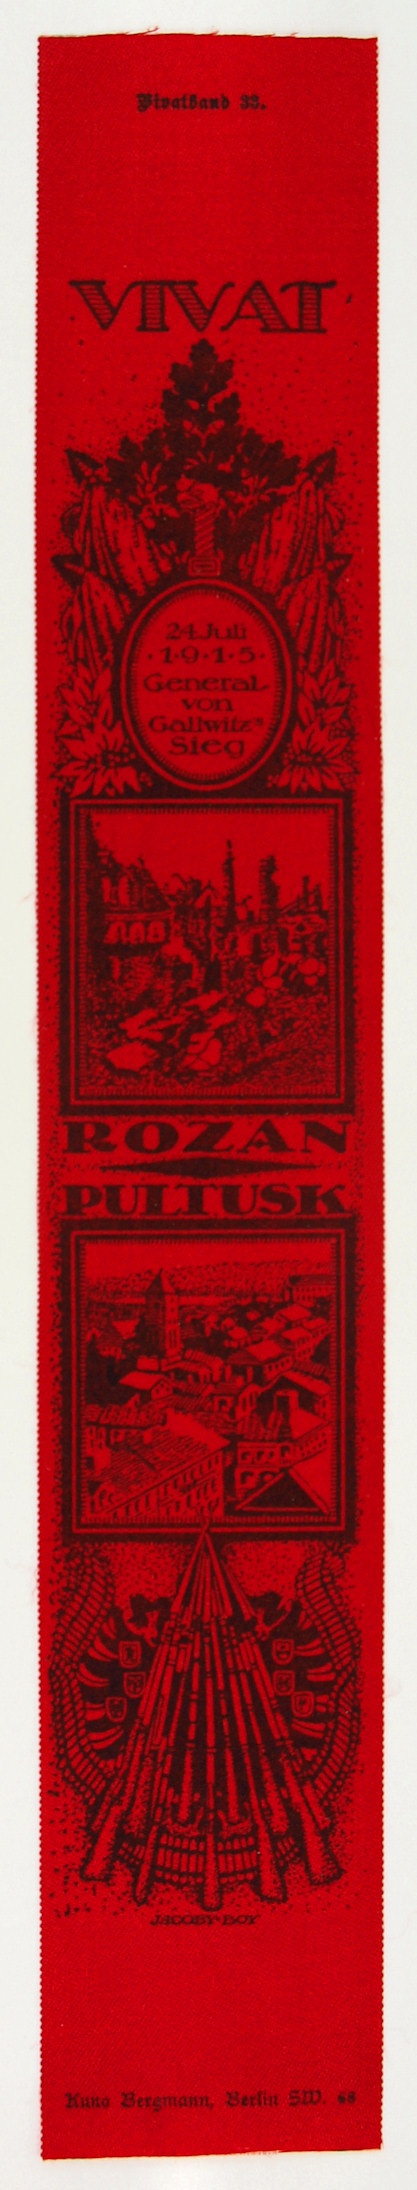 Vivatband anlässlich der Einnahme der Festungen Rozan und Pultusk, 1. Weltkrieg 1915 (Museum Weißenfels - Schloss Neu-Augustusburg CC BY-NC-SA)